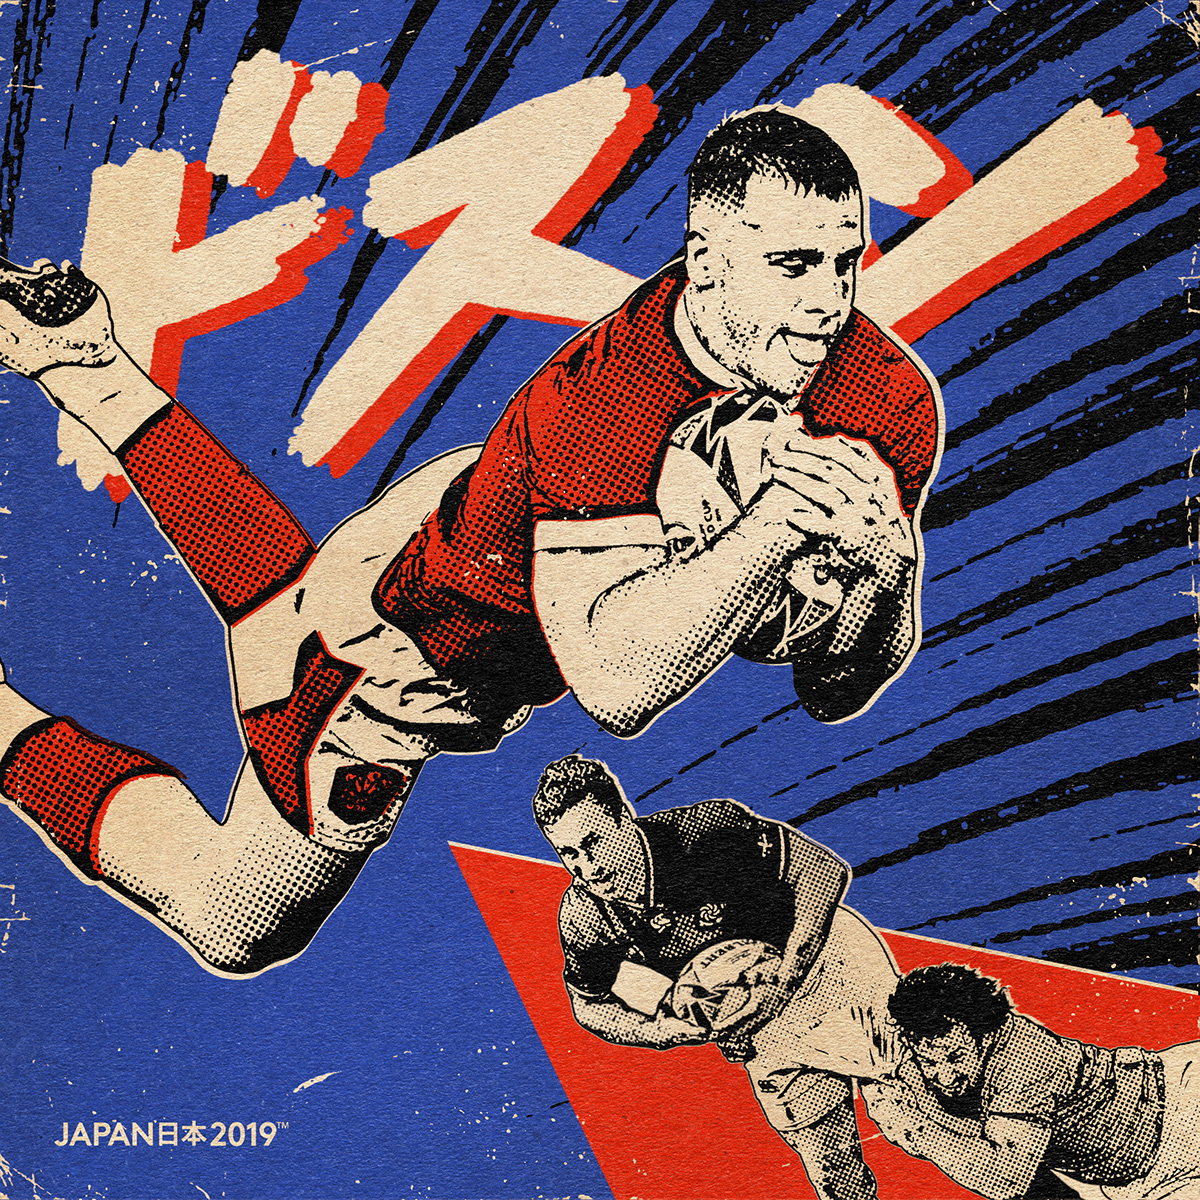 paiheme paiheme studio RWC Rugby manga vintage comics Japan 2019 japanese art Retro